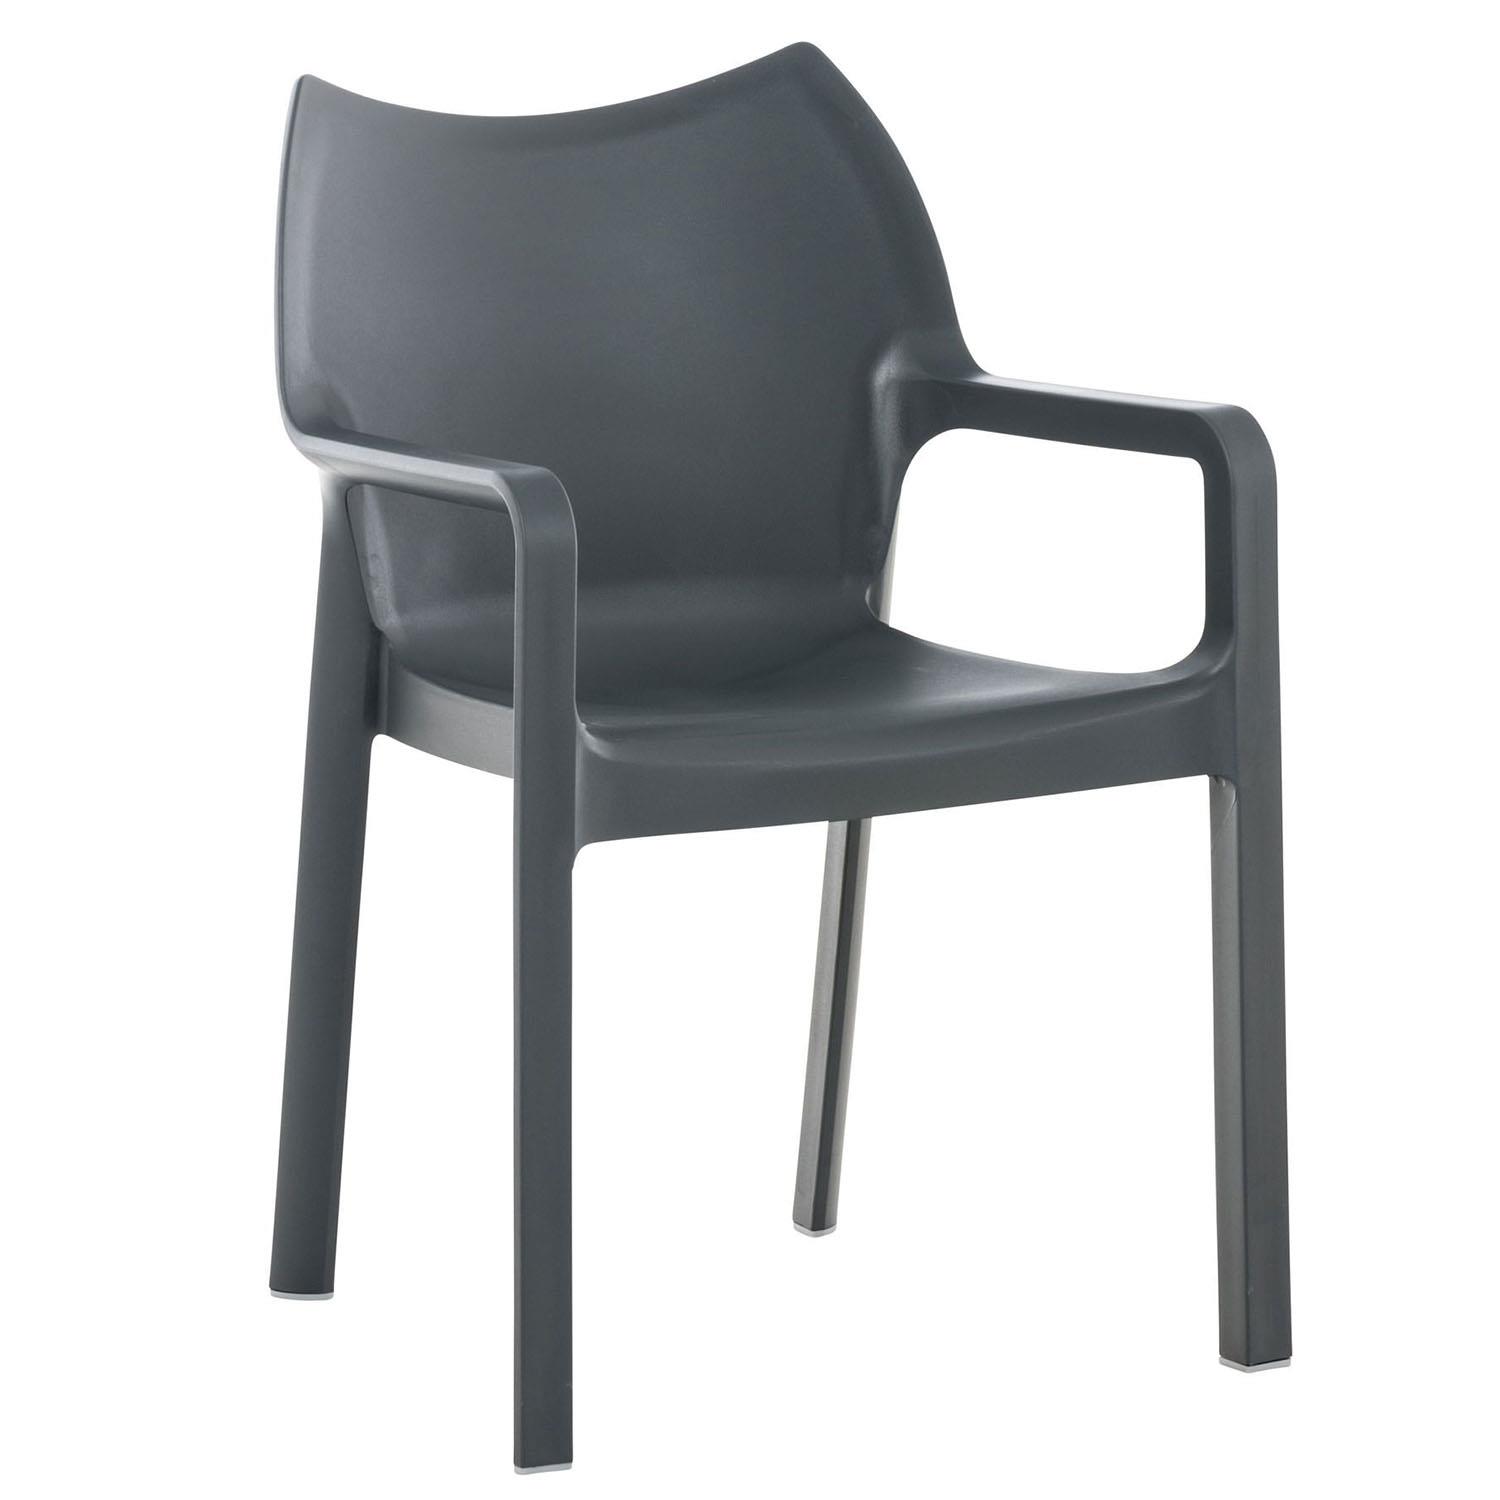 Cadeira de Visita RAMOS, Apoia Braços Integrados, Moderno e Resistente, Cor Cinza Escuro